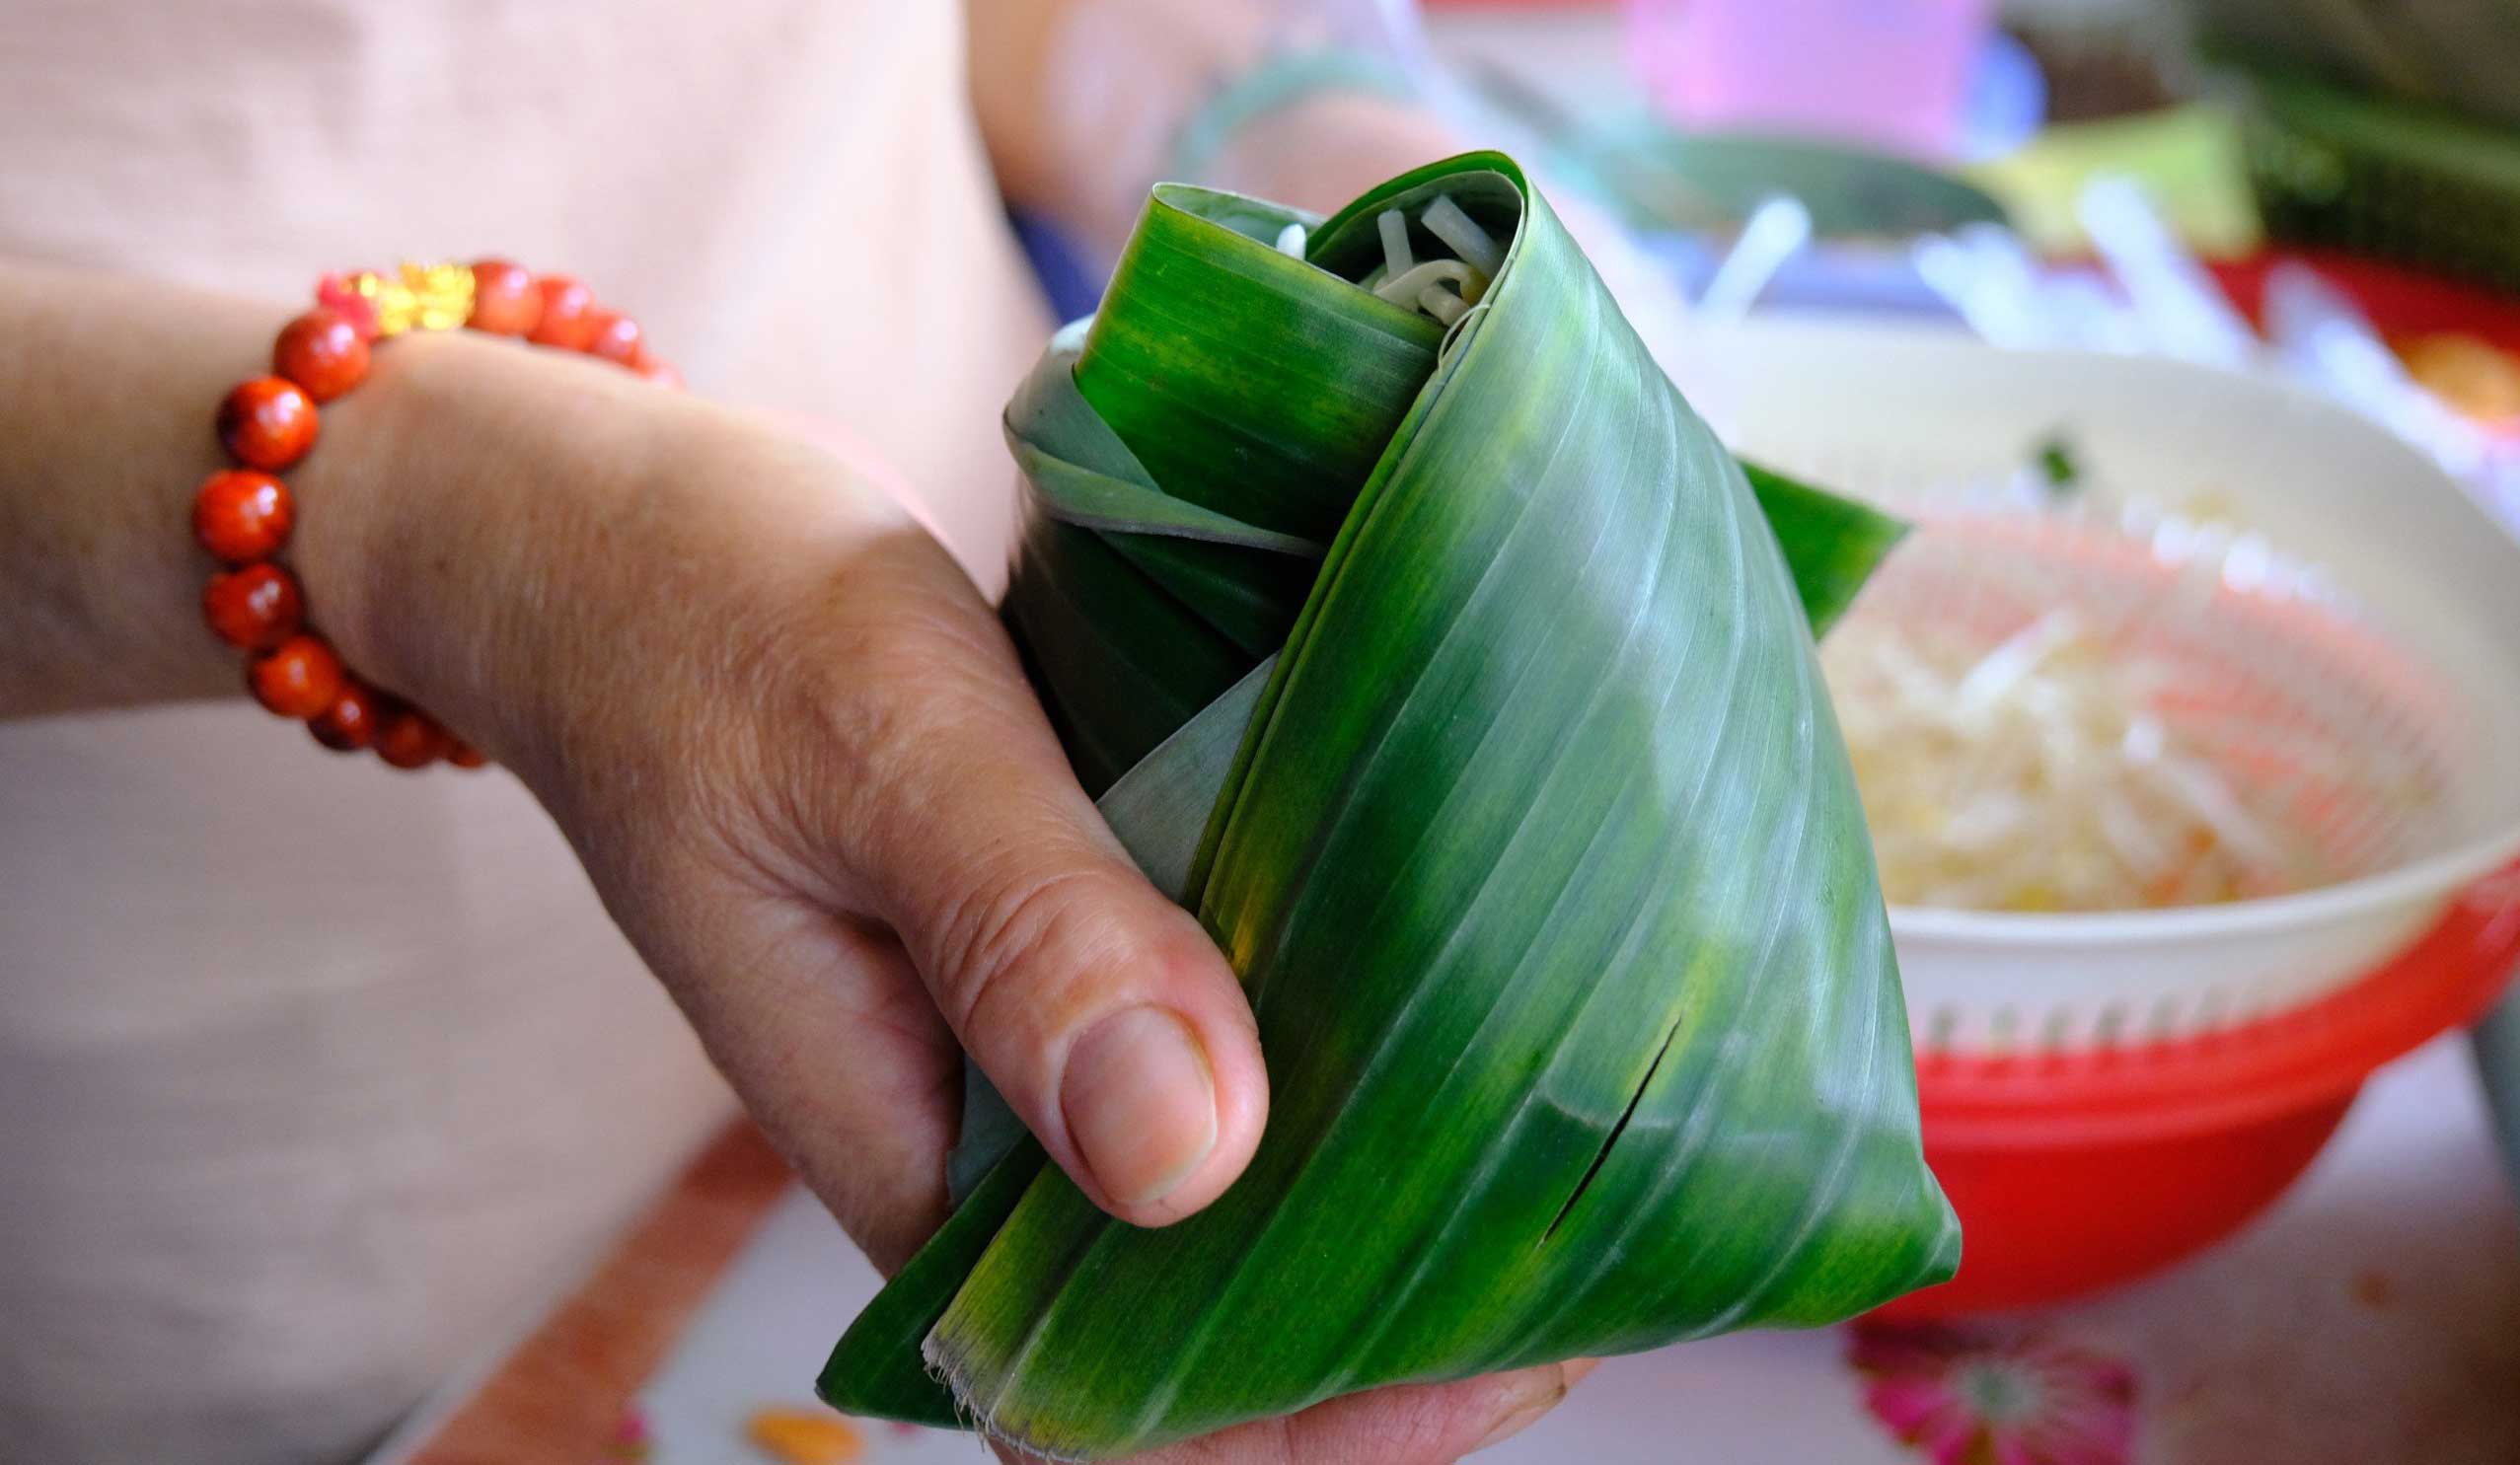 “Bánh gói trong lá chuối có hương vị thơm hơn là để trong túi nilong. Nhiều người dân vì thích hương vị đó mà tìm đến mua“, bà Chi nói.